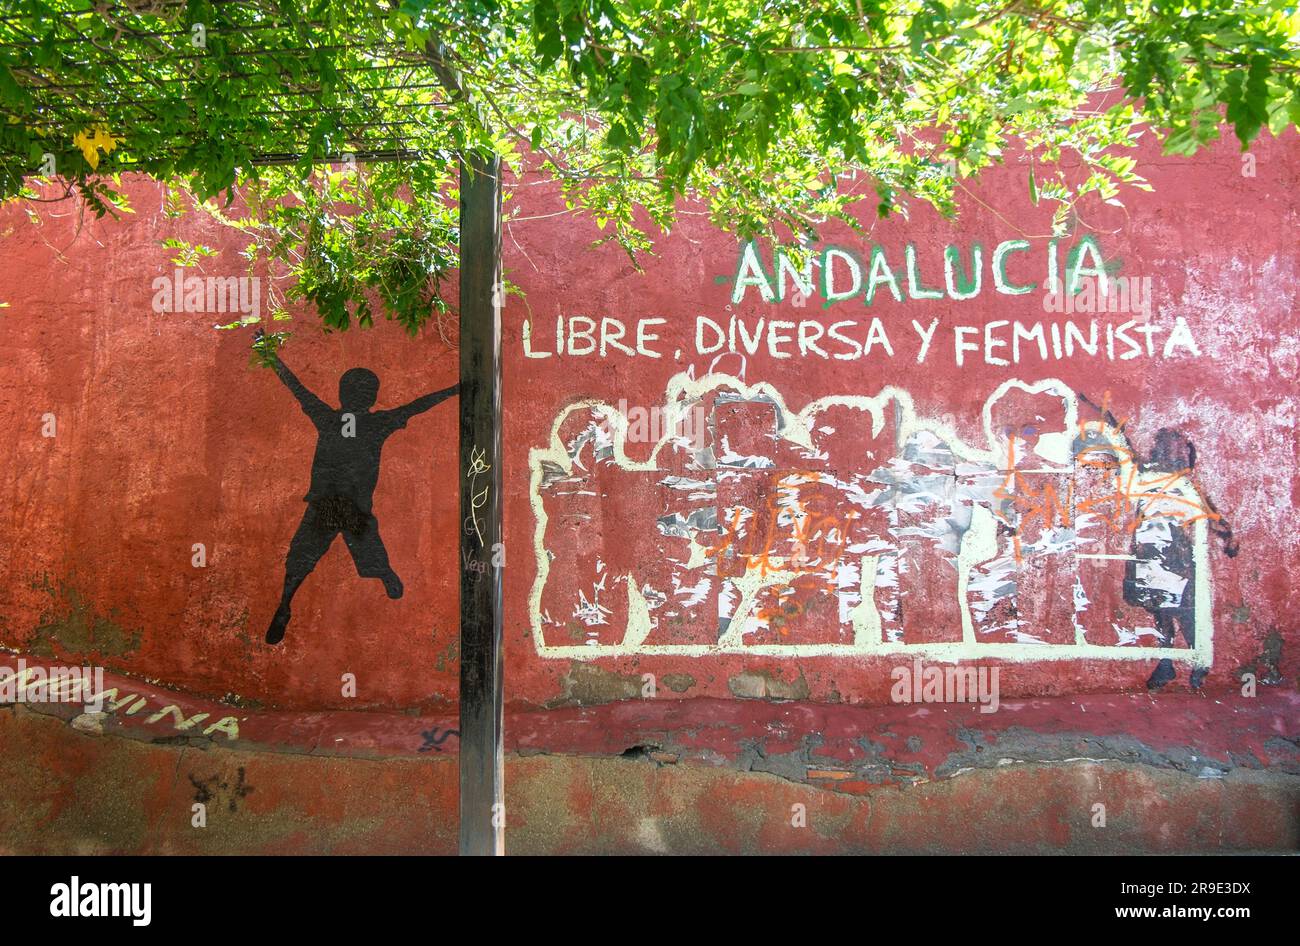 Graffiti on a Wall in Almeria Spain. Libre Diversa Feminista Andalucia Stock Photo